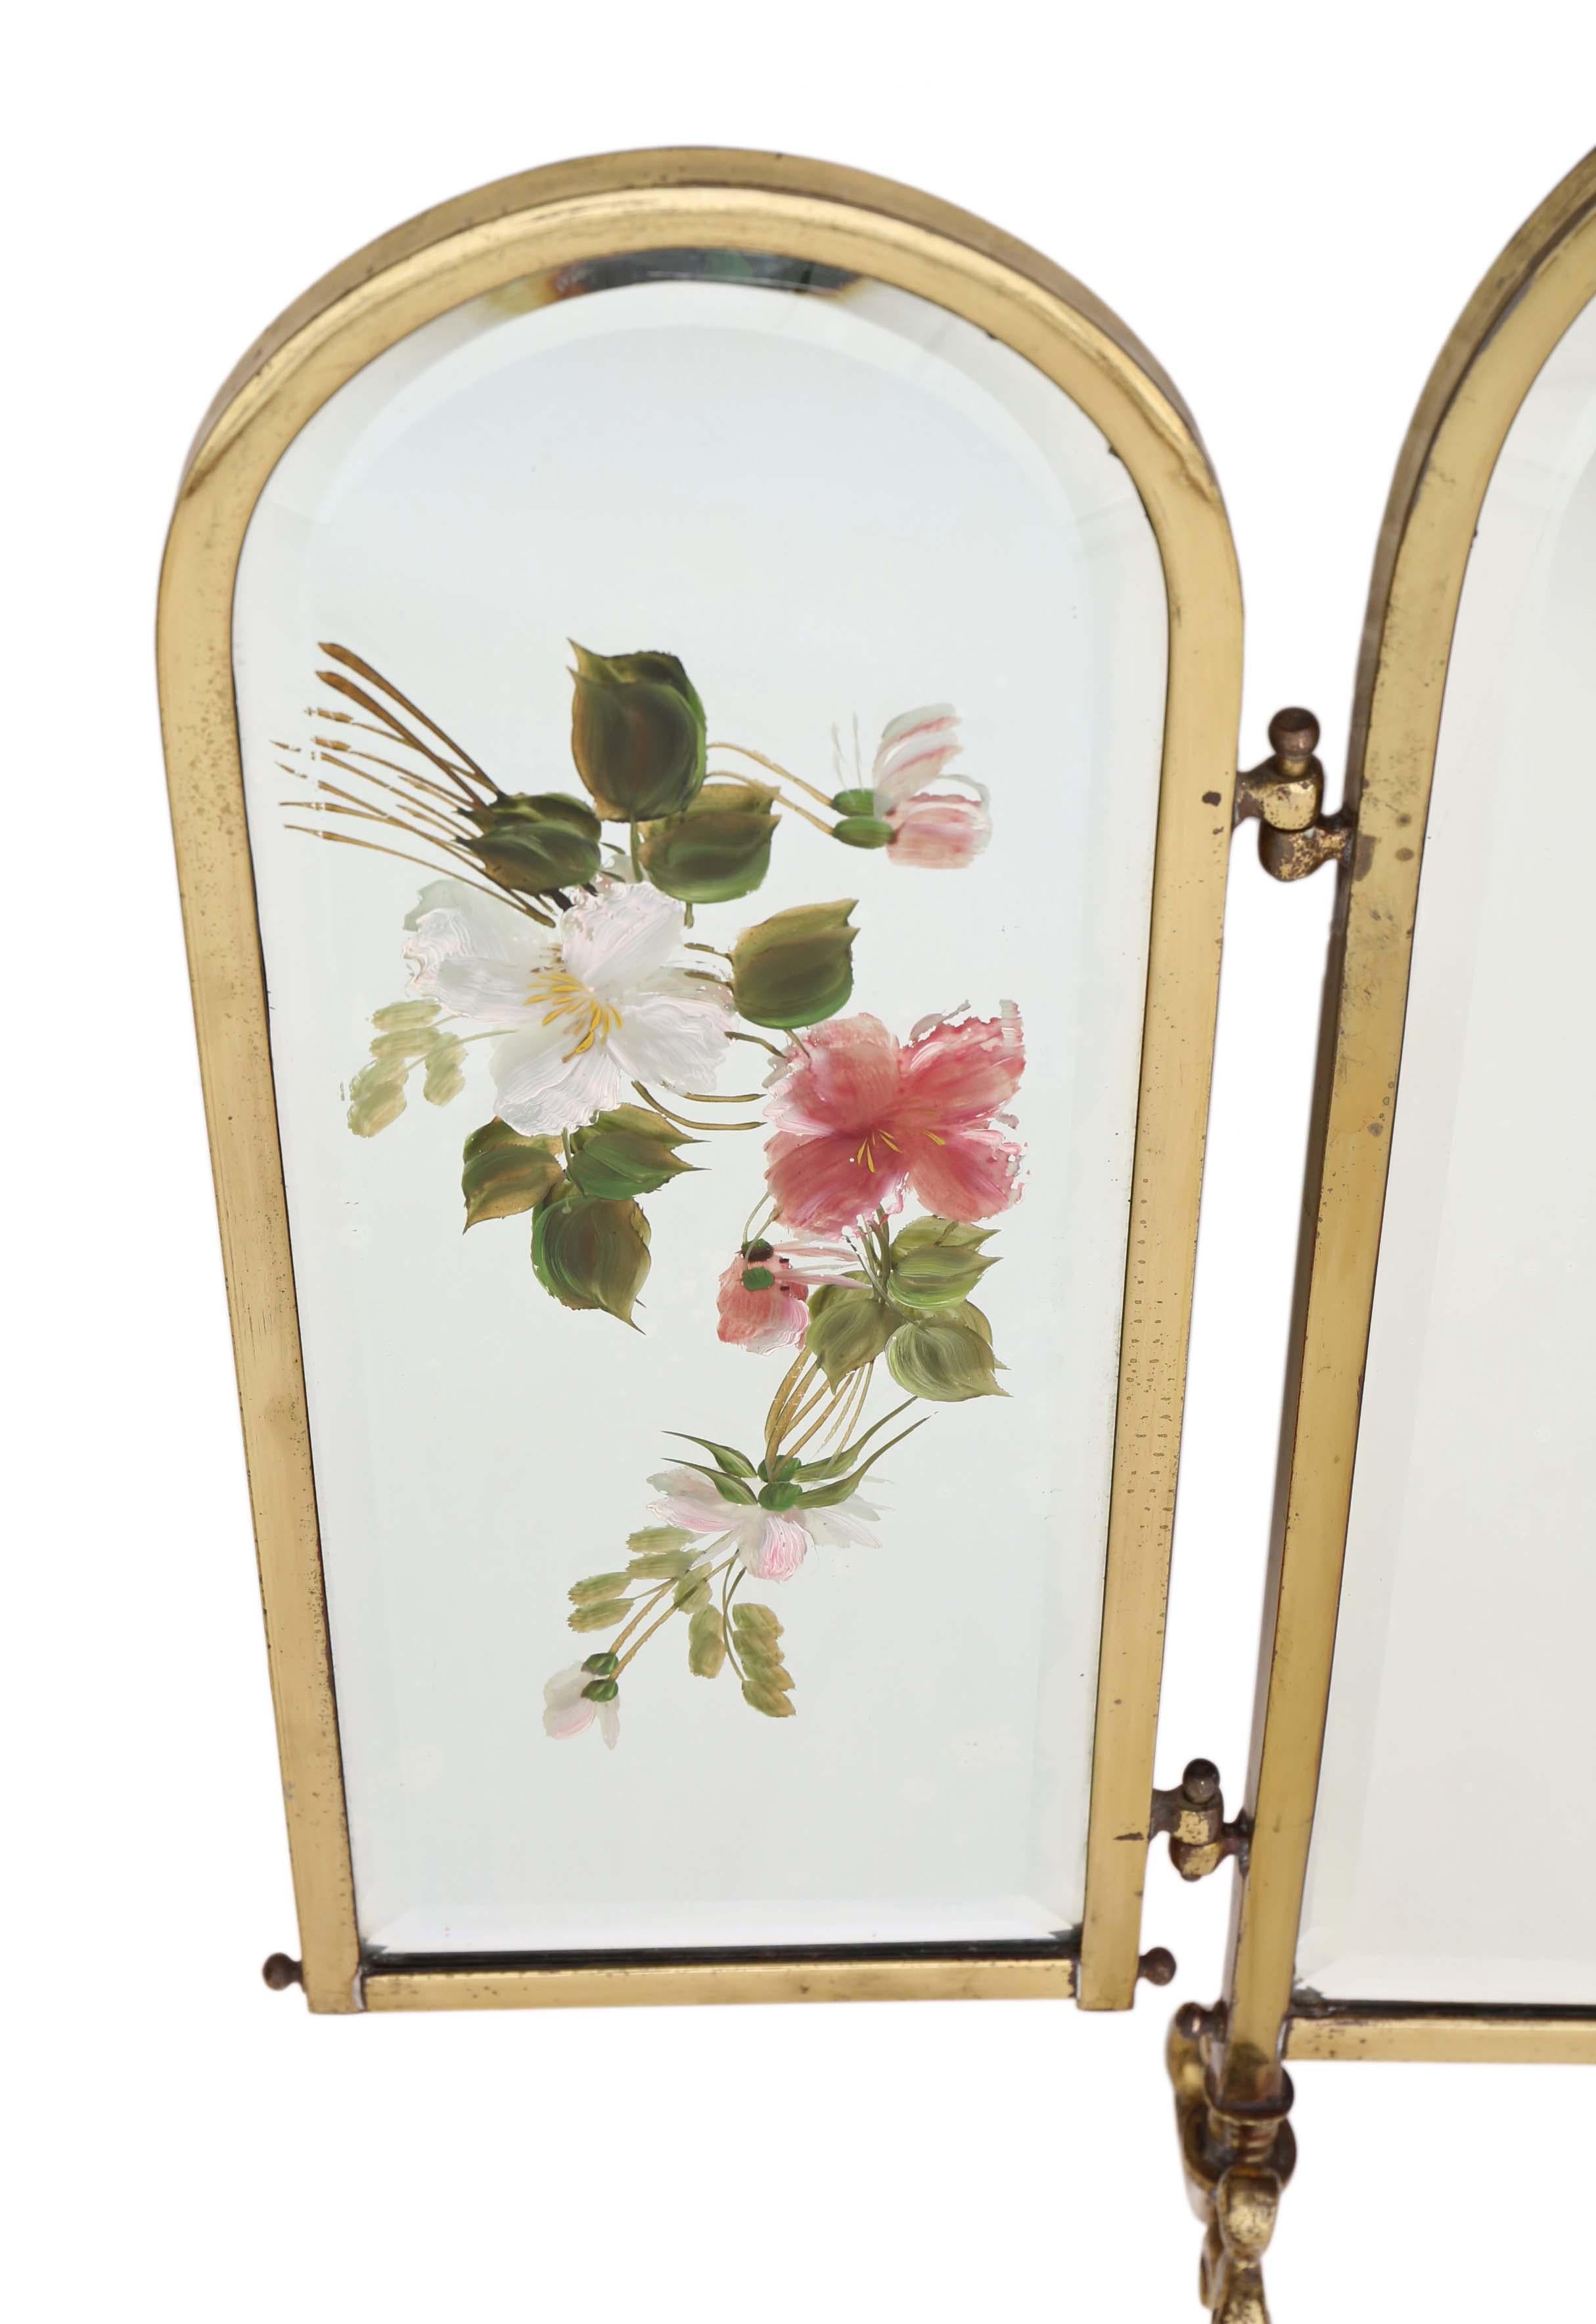 Antigua pantalla de chimenea victoriana de latón decorada con cristal biselado, Siglo XIX.

Es una pieza preciosa, que sería estupenda para decorar una chimenea cuando no se utiliza.

Un gran artículo con una bonita decoración de espejos